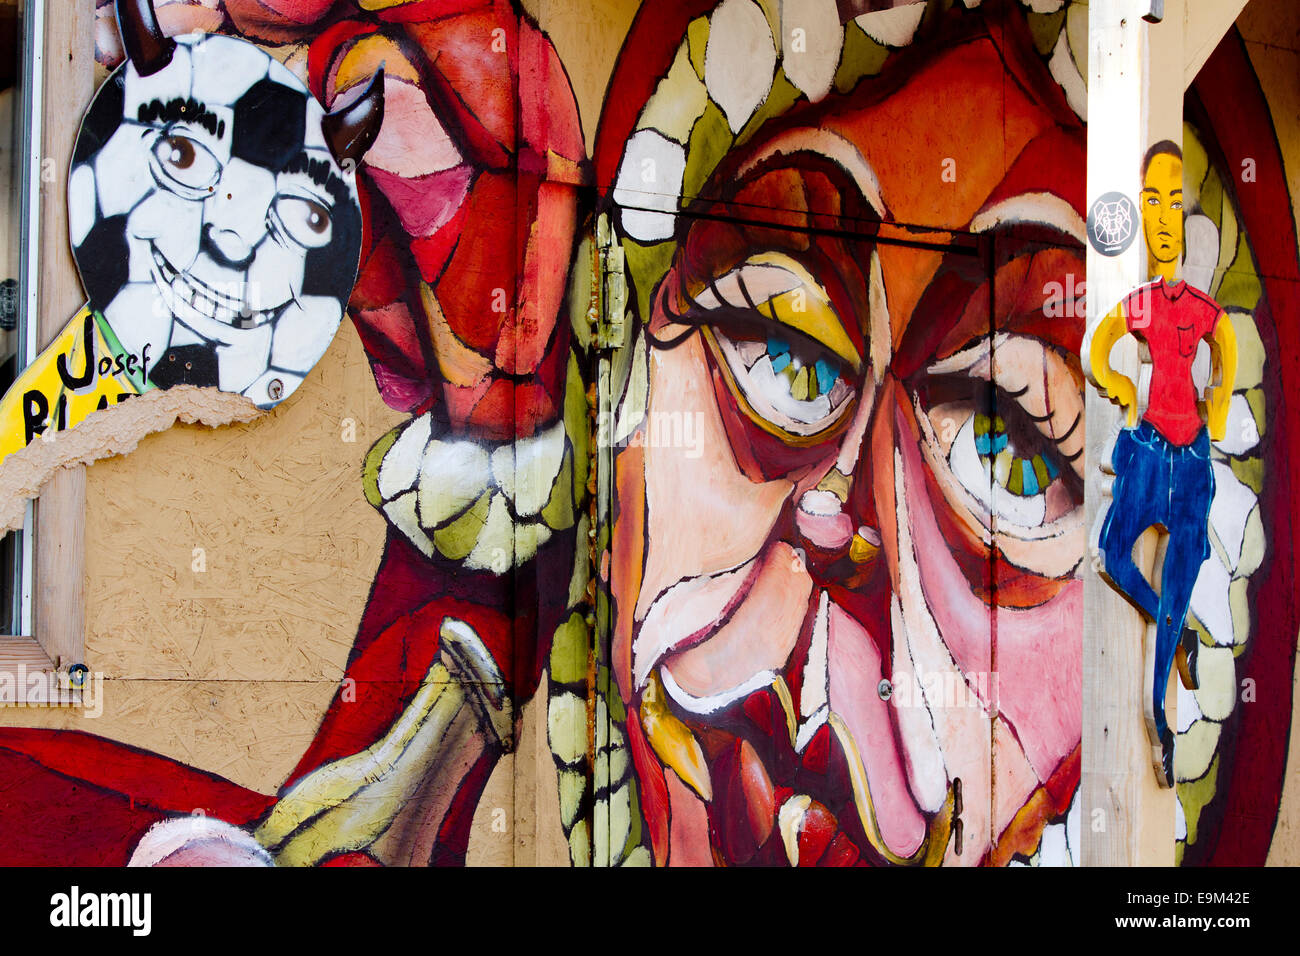 Mur de Berlin graffiti femme dansant de grands yeux surreal Banque D'Images